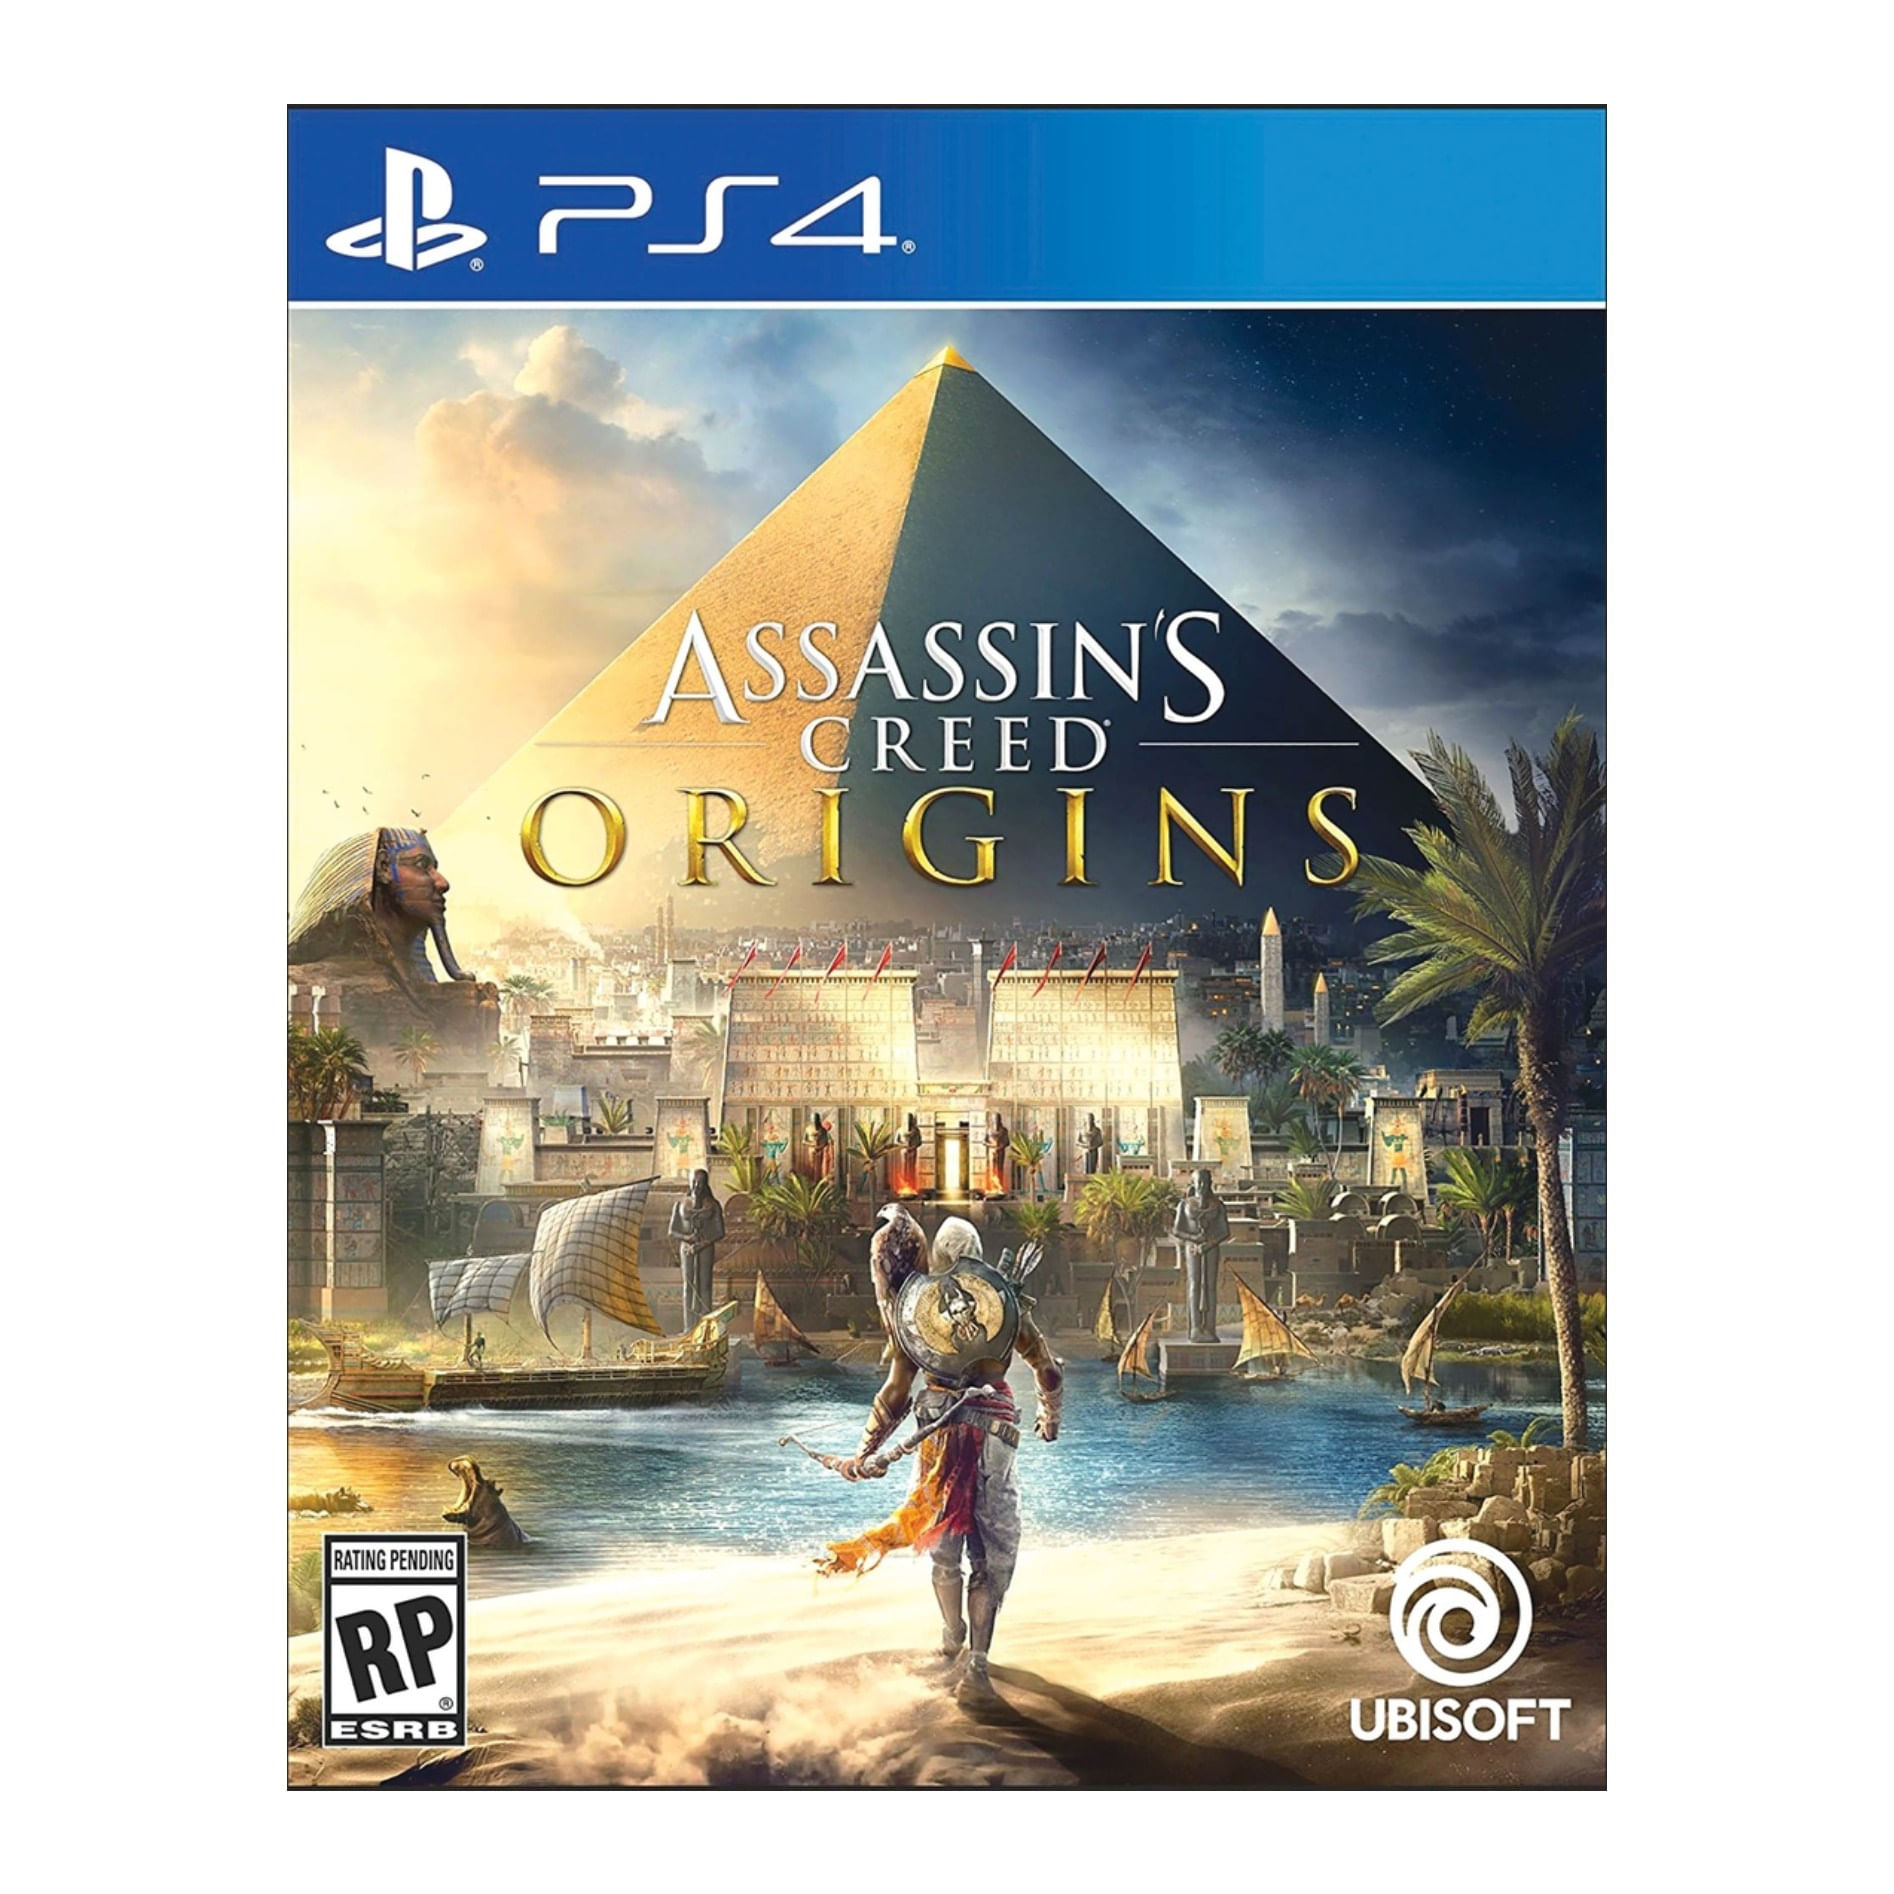 Juego Ps4 Assassins Creed Origins